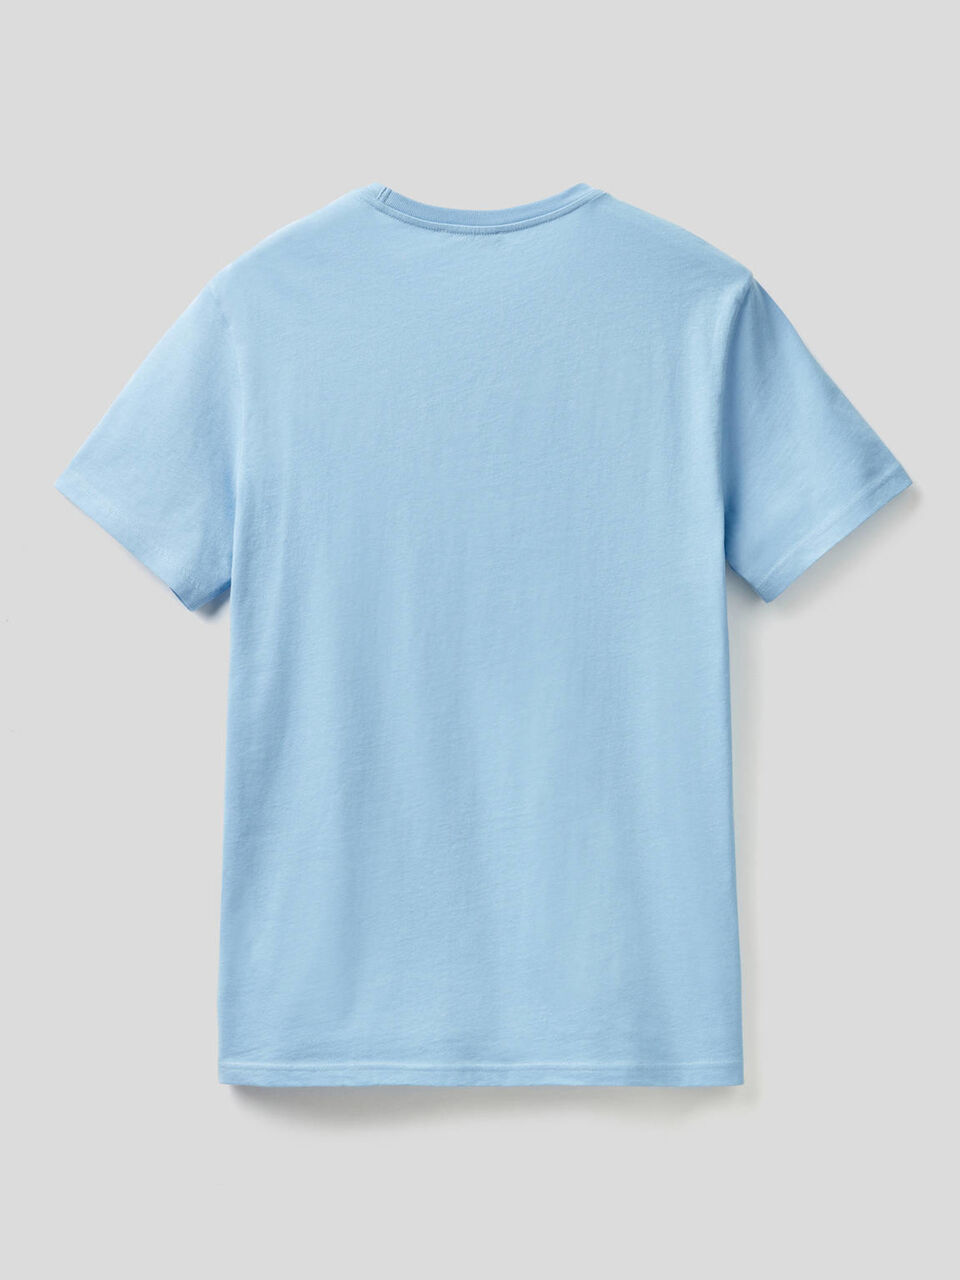 Hellblaues T Shirt Aus Reiner Baumwolle